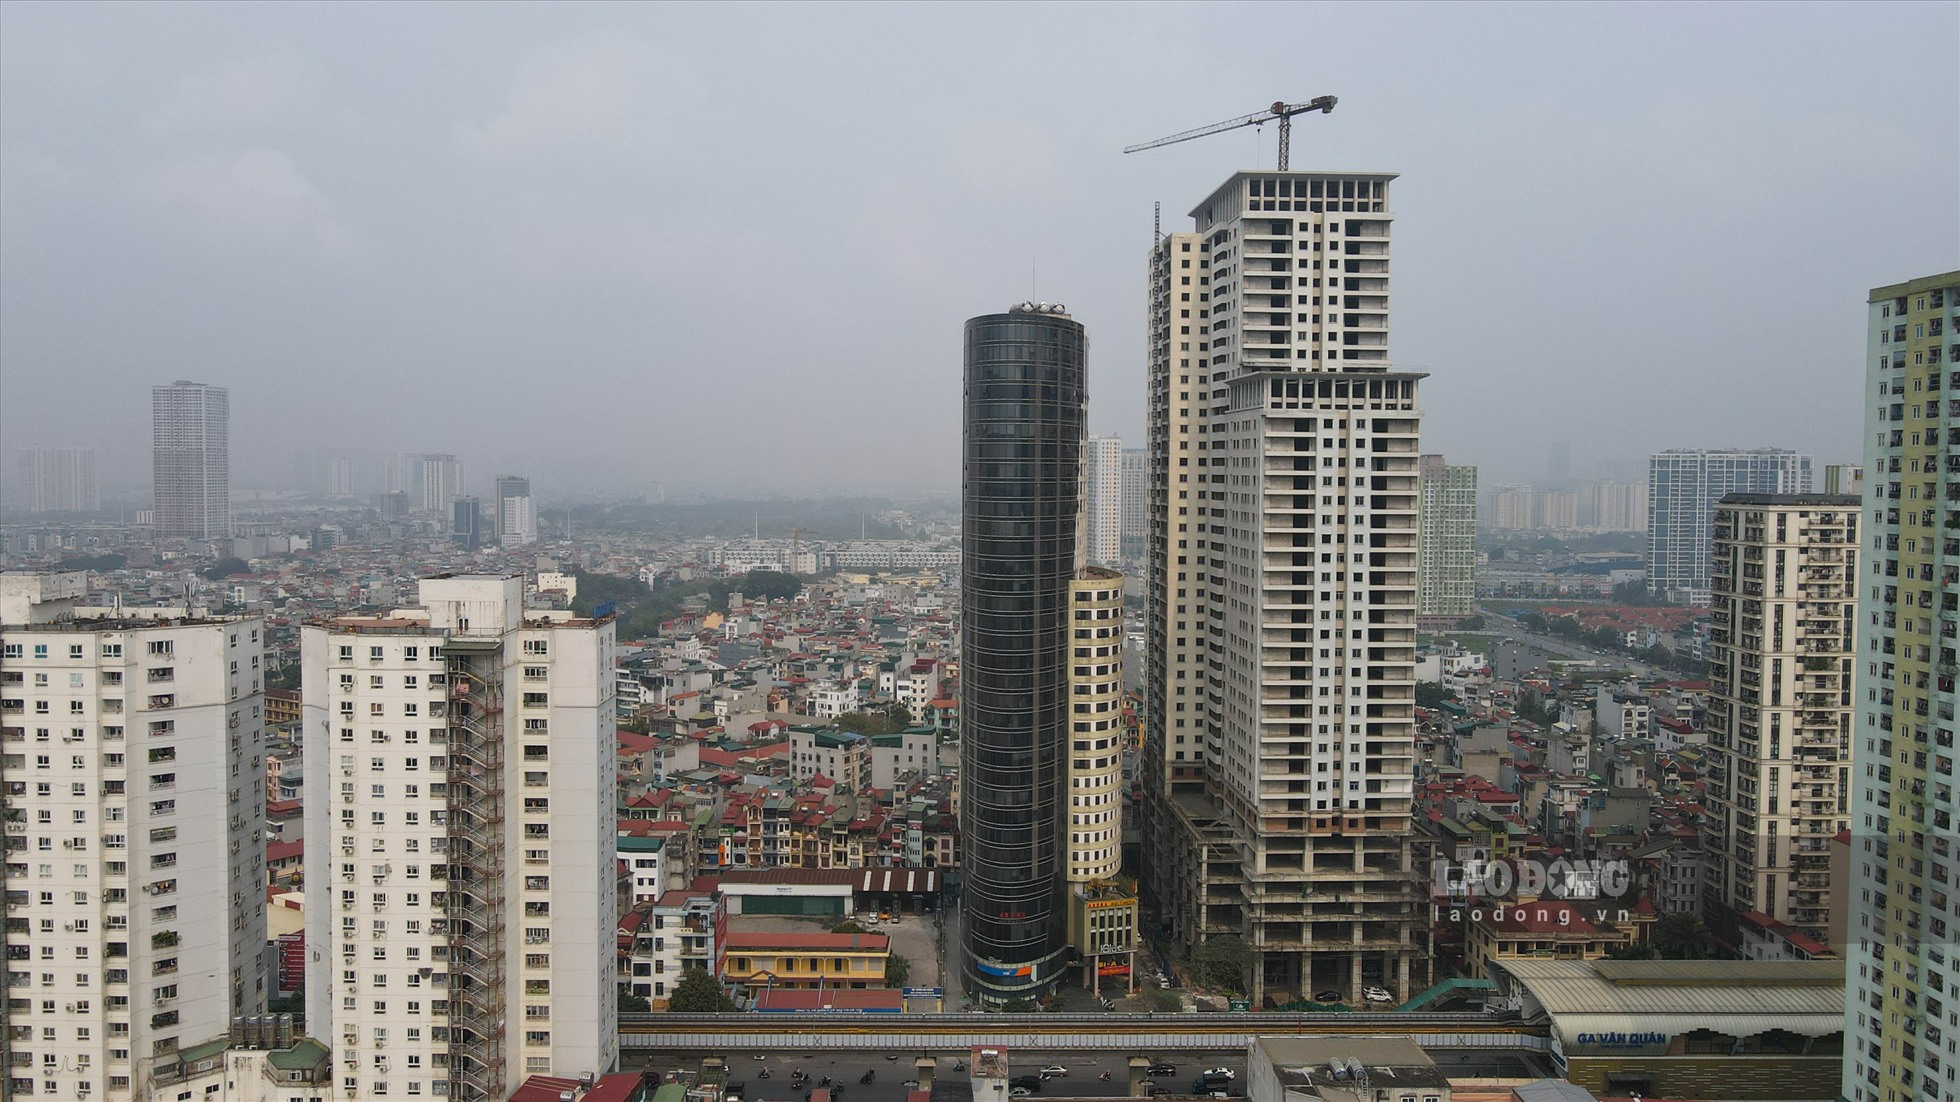 Dự án tọa lạc tại 110 Trần Phú, xây dựng trên khu đất 4.992 m2 với thiết kế tòa tháp 39 tầng nổi và 3 tầng hầm, từ tầng 1 đến tầng 6 là khu trung tâm thương mại, văn phòng, từ tầng 7-39 là khu căn hộ với tổng số 439 căn.